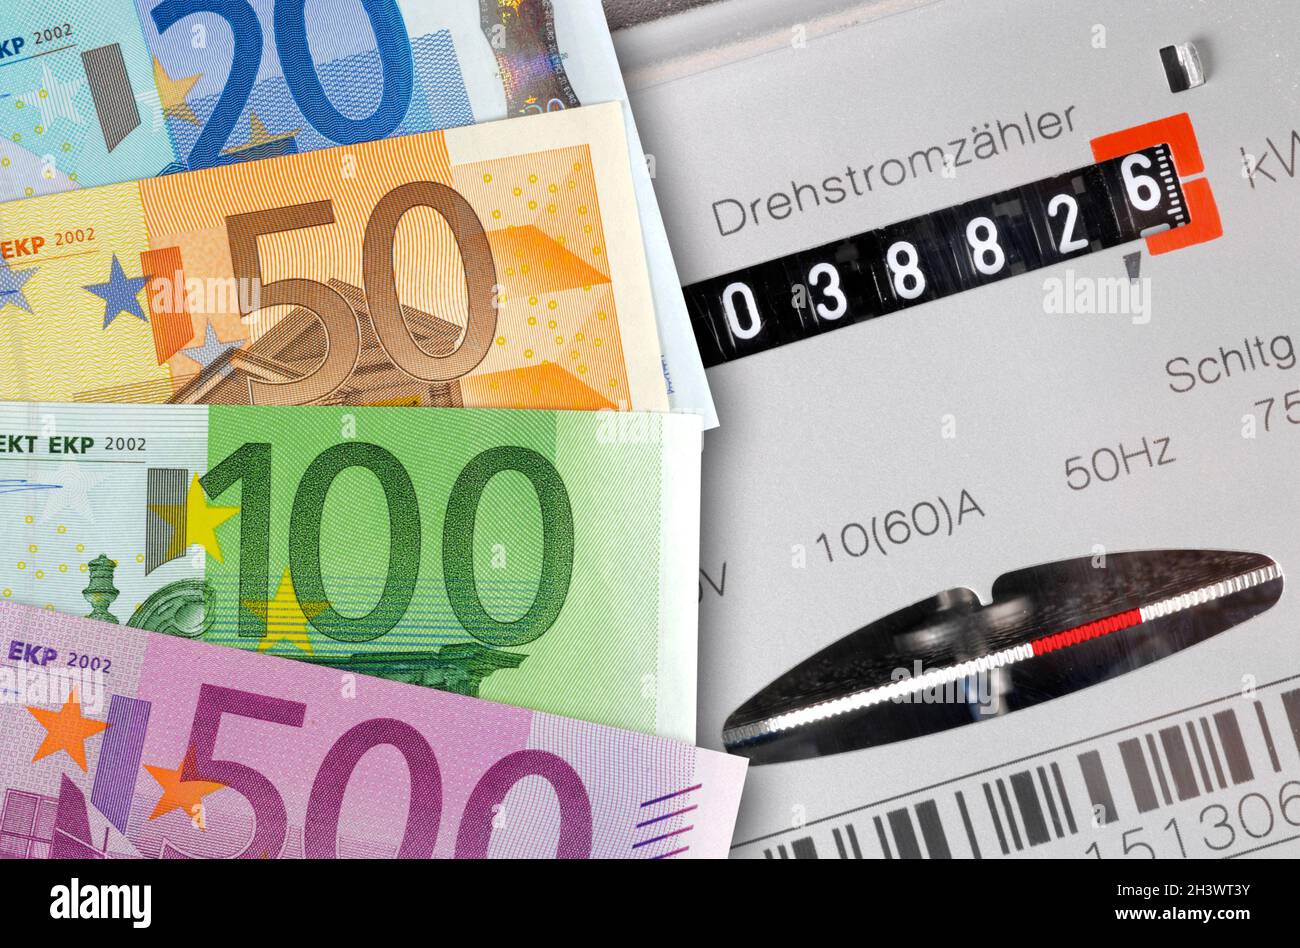 Euro Geldscheine und Nebenkosten für Energie Stock Photo